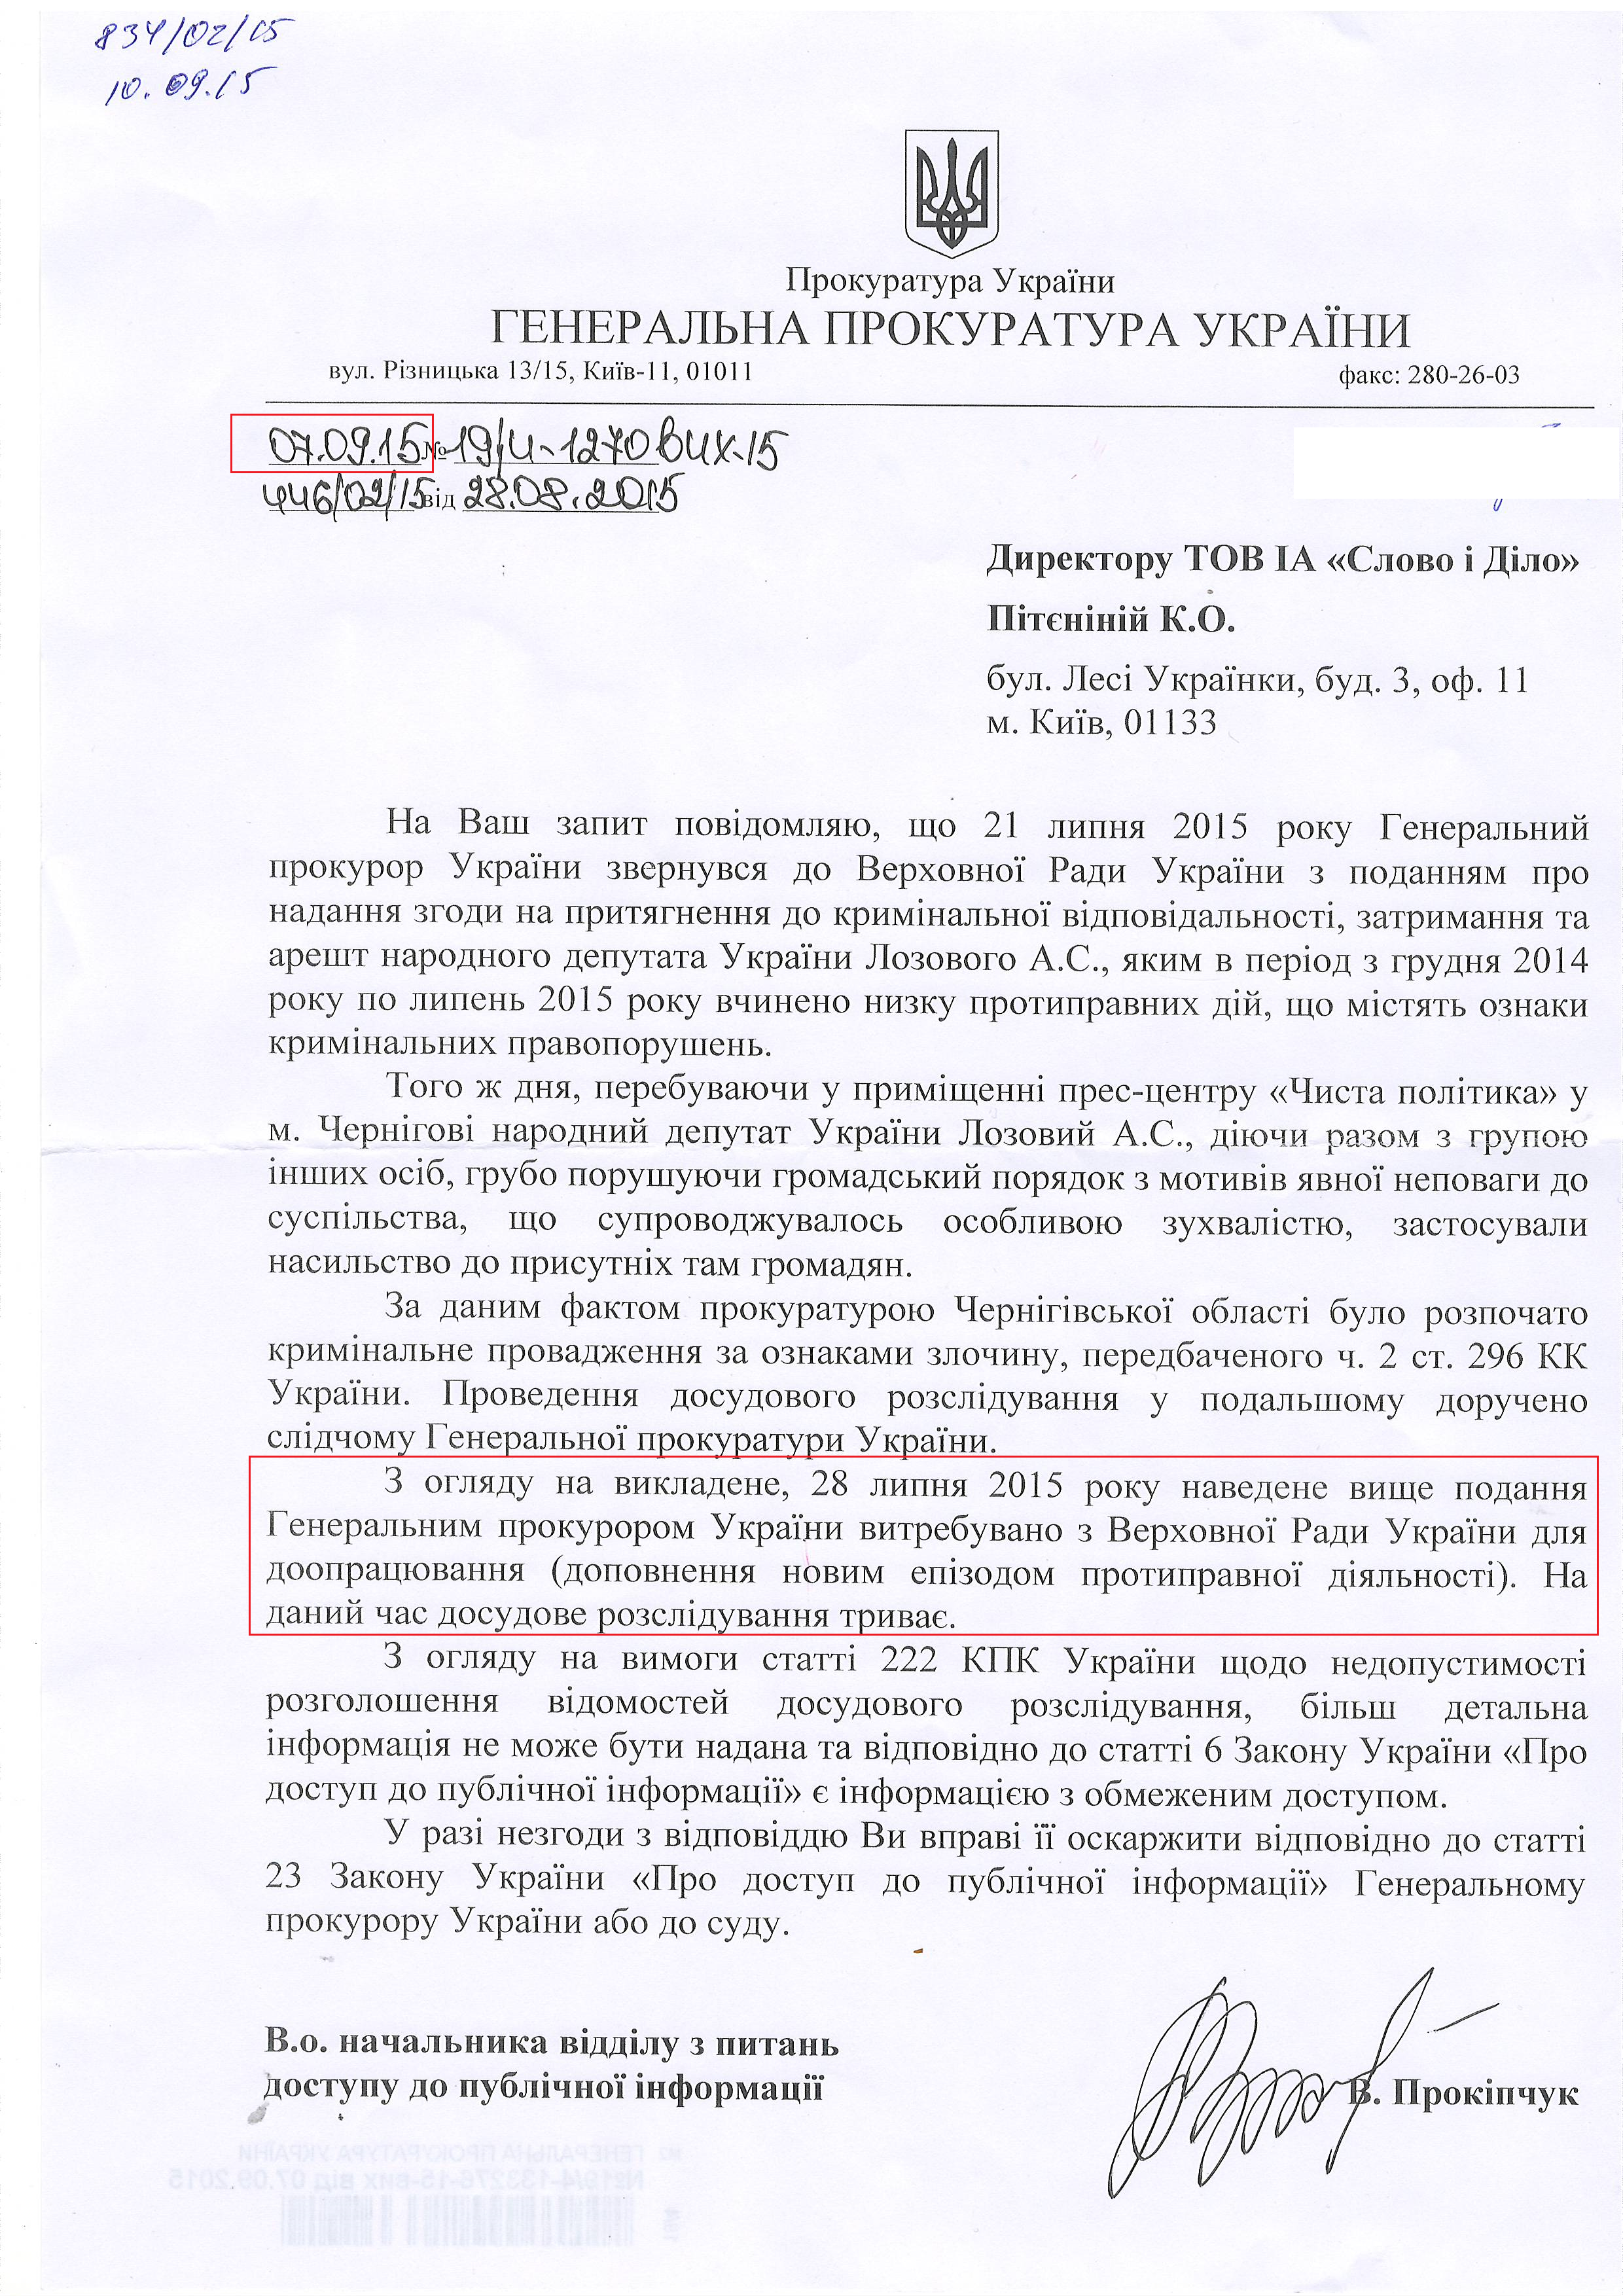 Лист Генеральної прокуратури України від 7 вересня 2015 року